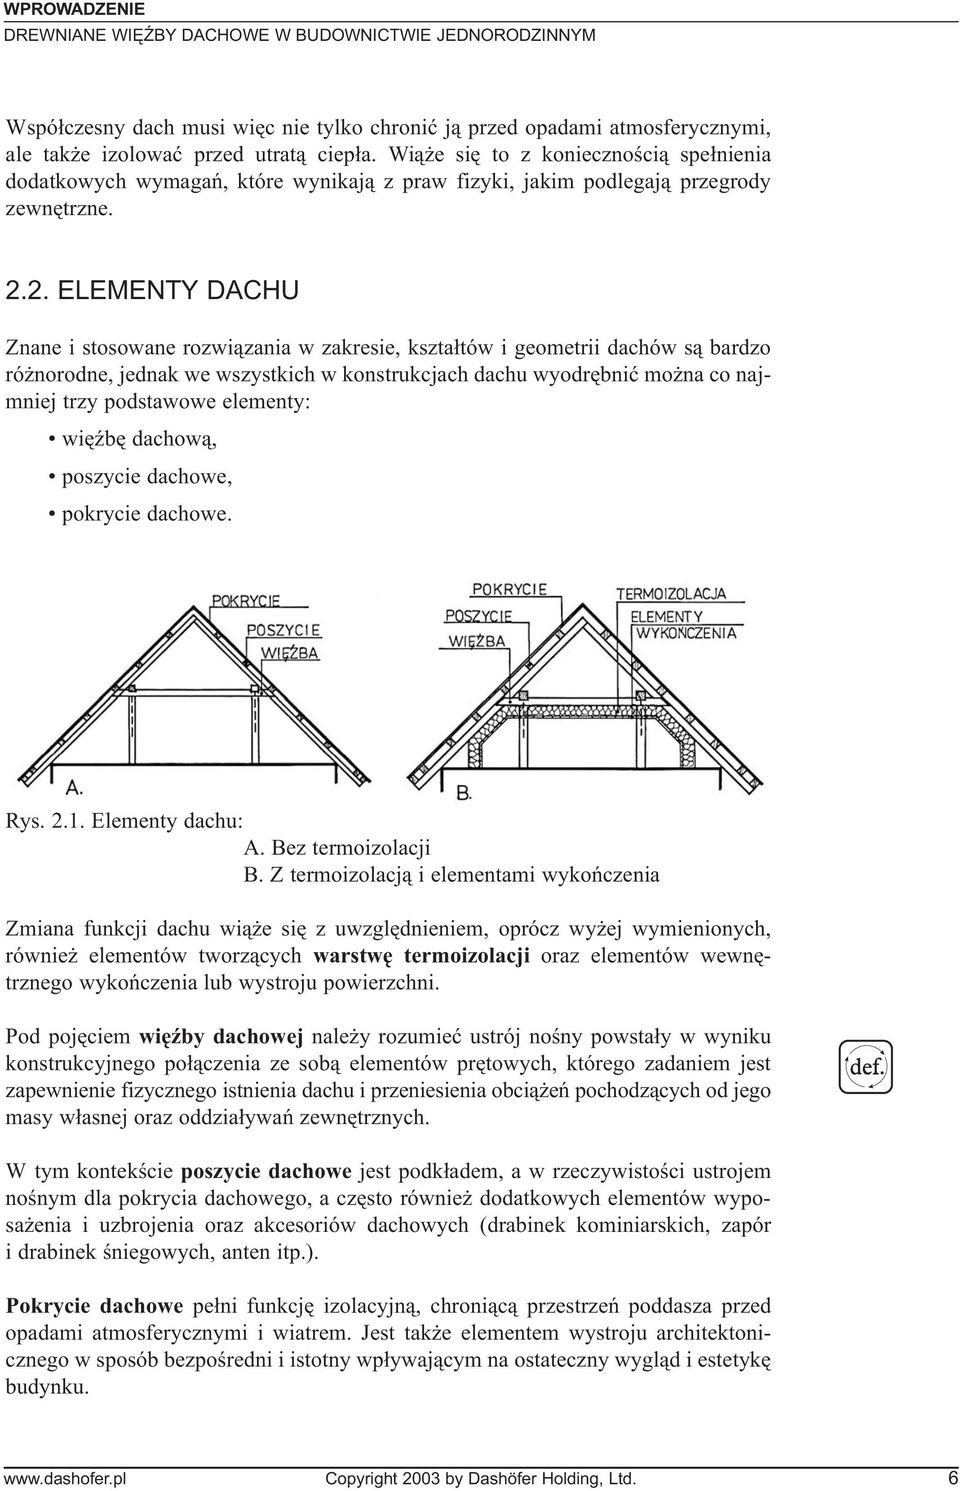 2. ELEMENTY DACHU Znane i stosowane rozwi¹zania w zakresie, kszta³tów i geometrii dachów s¹ bardzo ró norodne, jednak we wszystkich w konstrukcjach dachu wyodrêbniæ mo na co najmniej trzy podstawowe